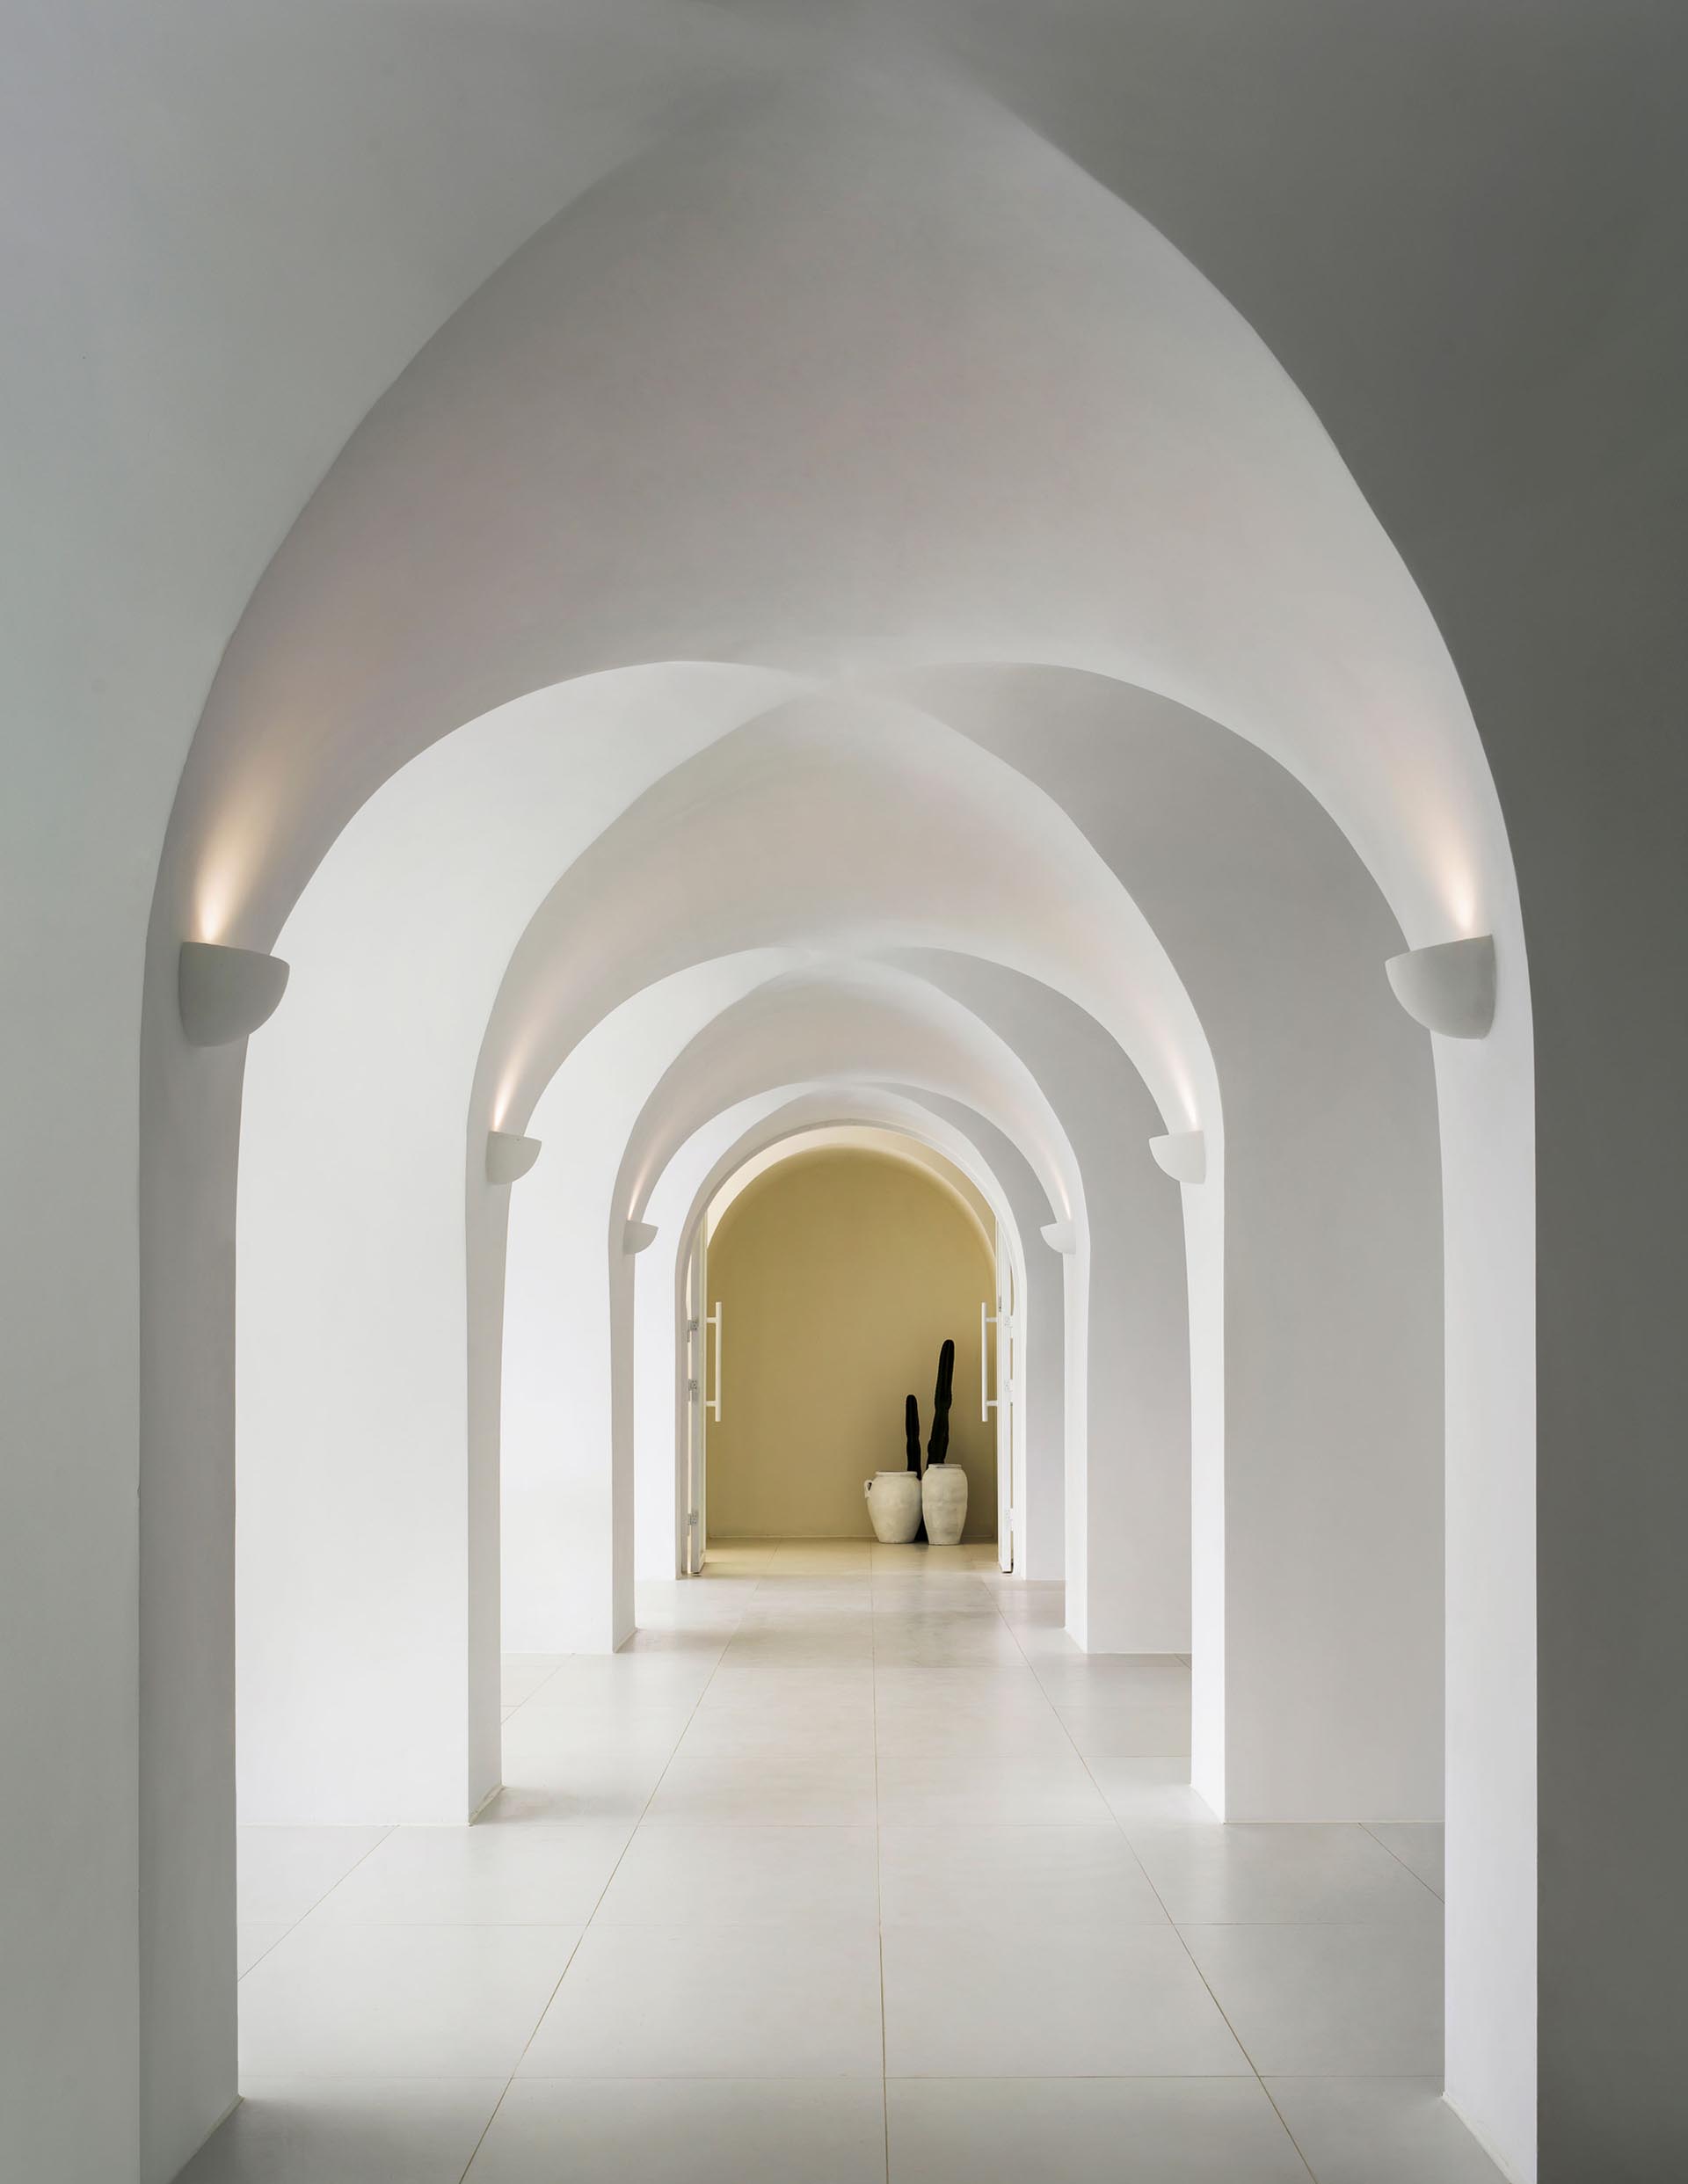 A minimalist hotel hallway that showcases arches.